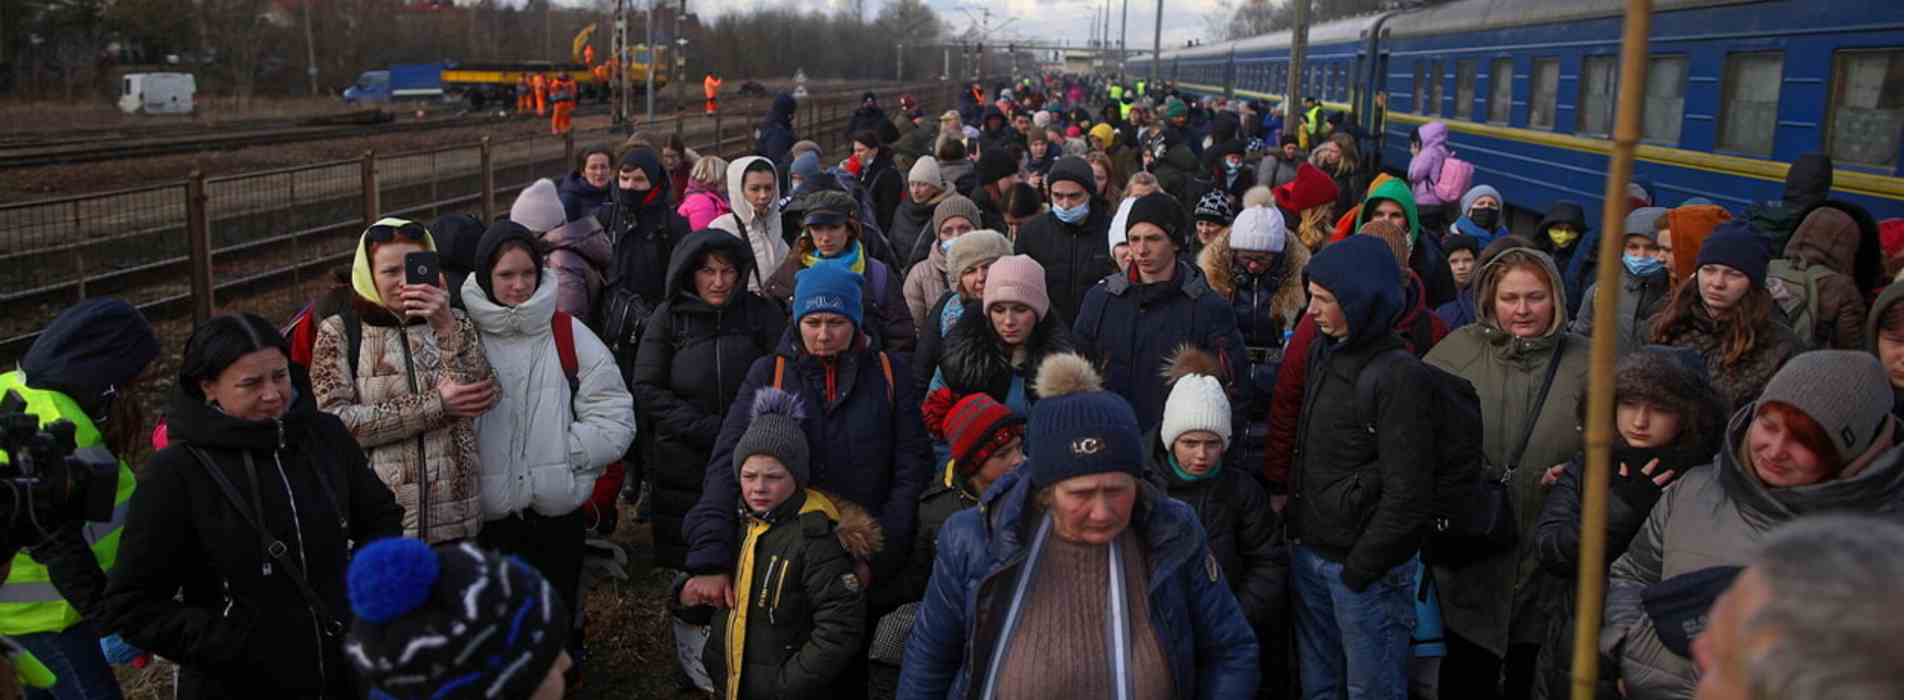 Studenti stranieri in fuga segregati in Ucraina. Farnesina e ambasciata italiana nel caos